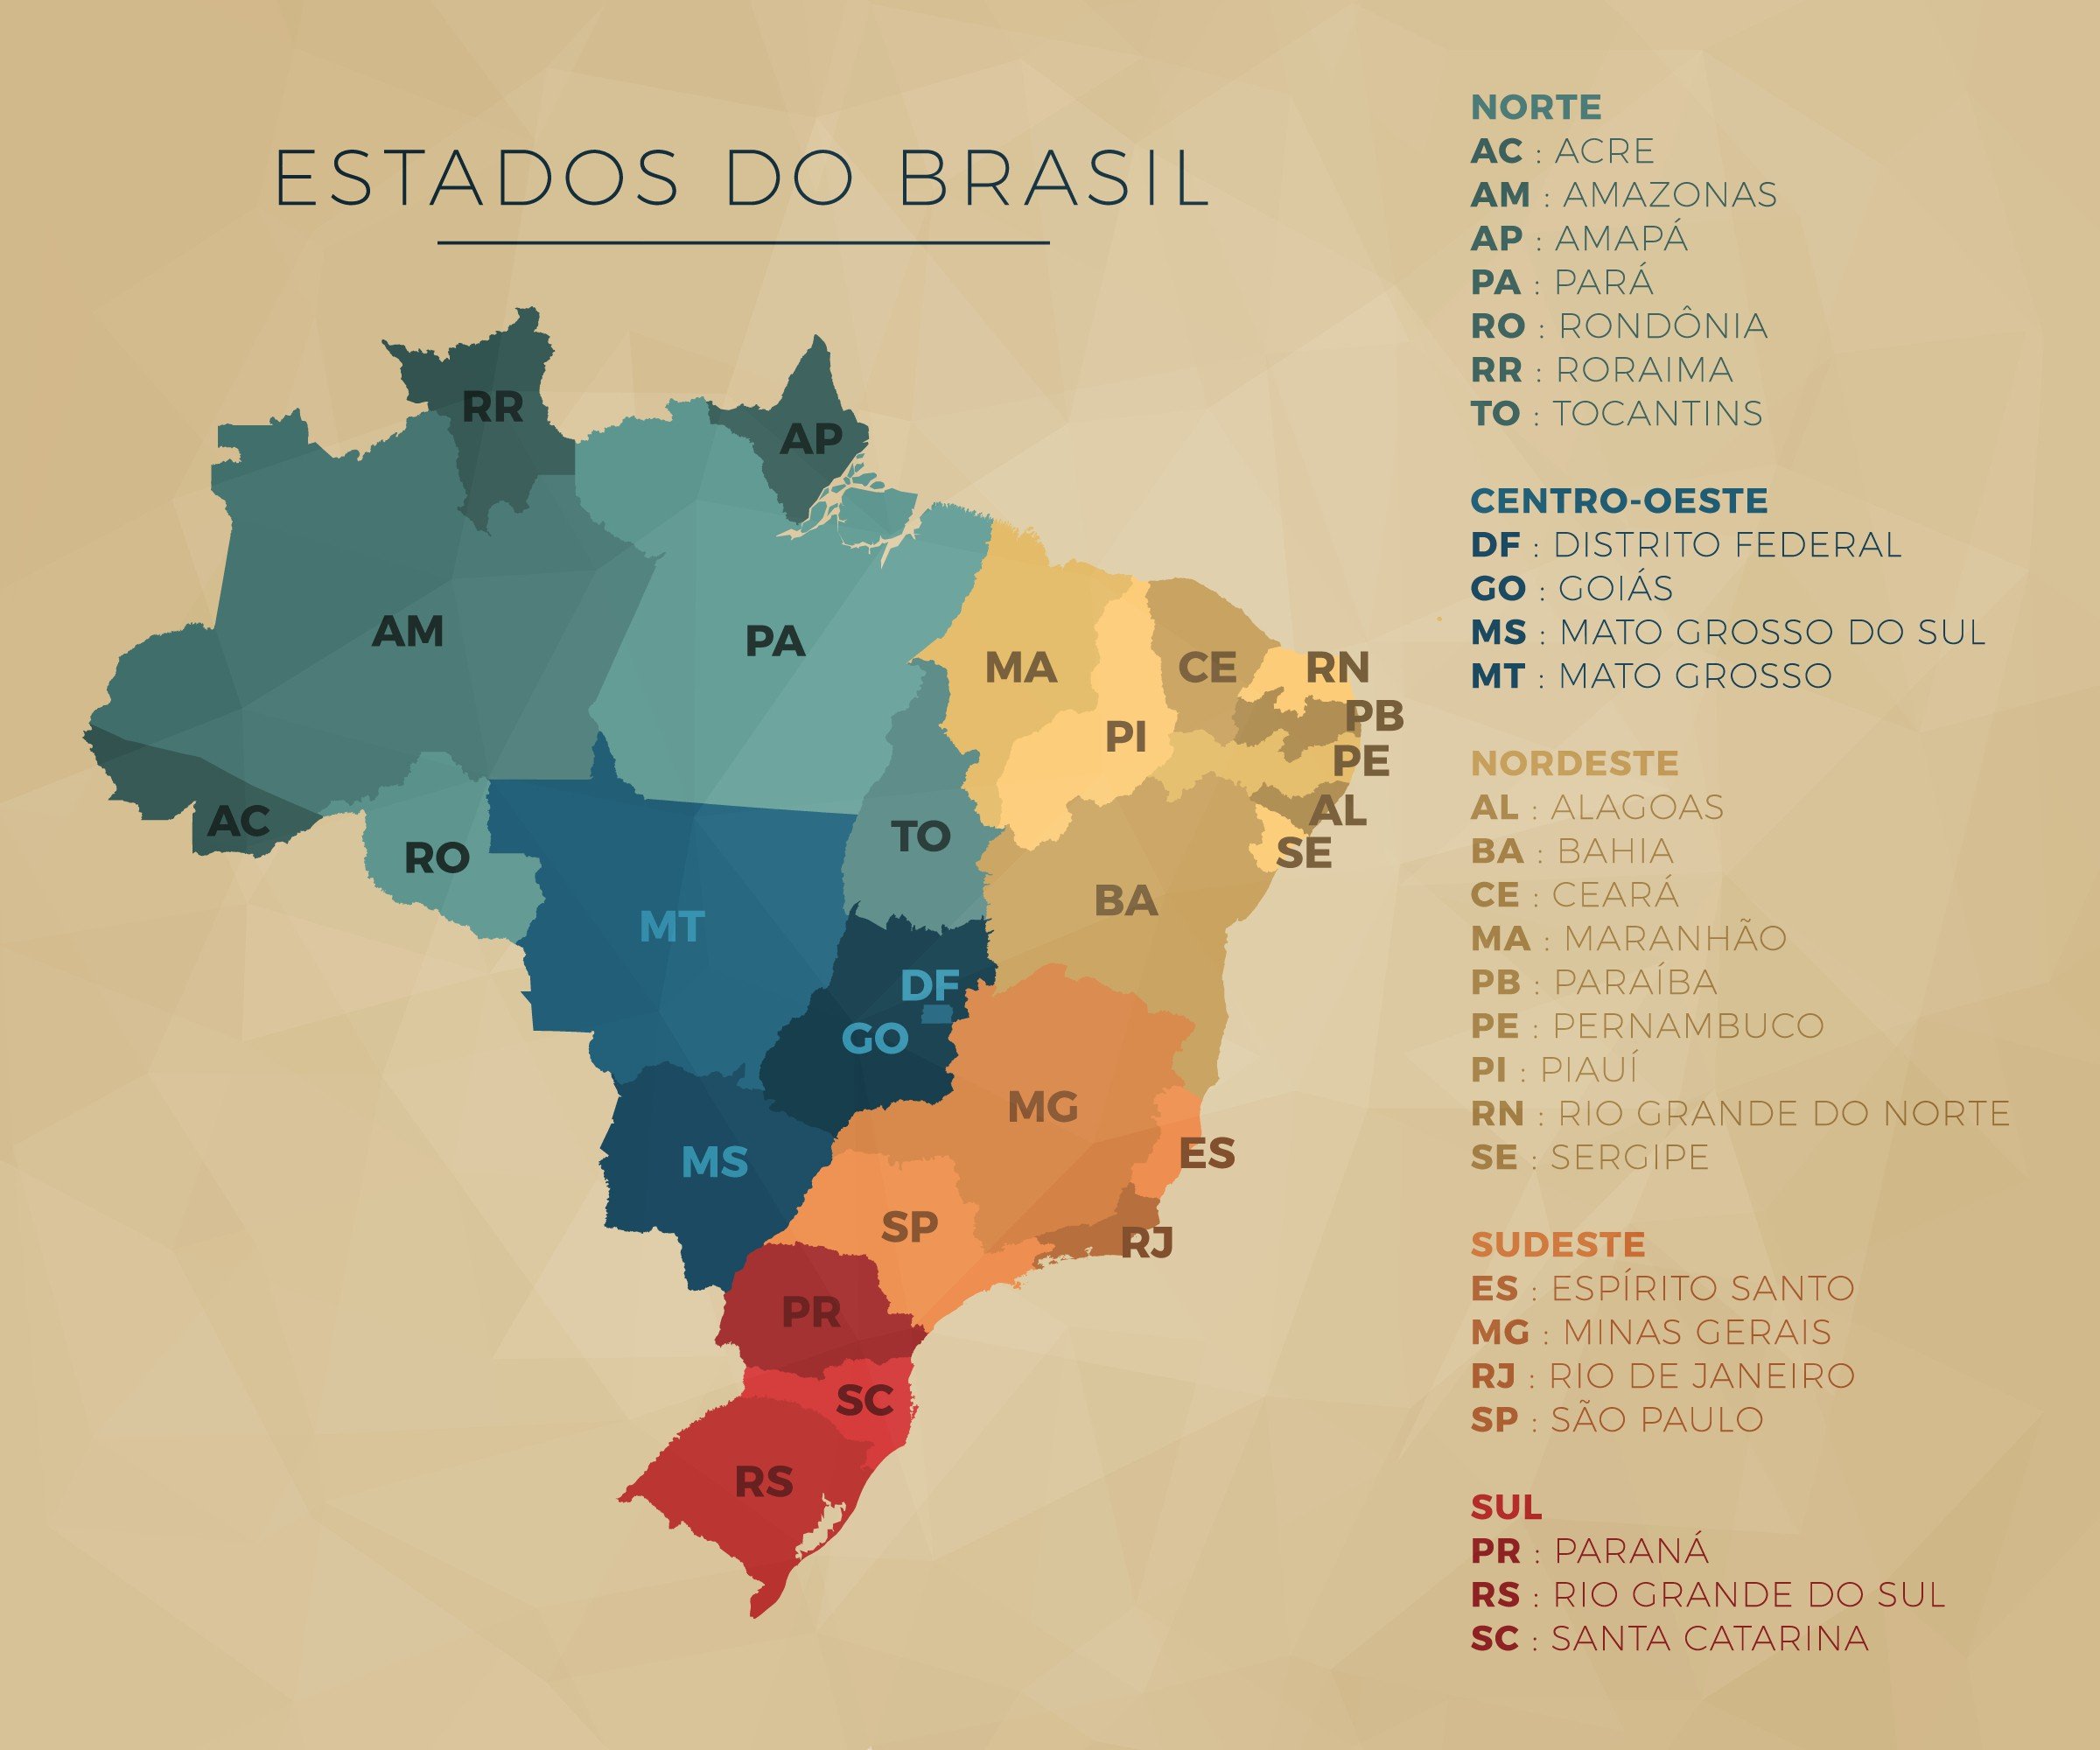 Mapa do Brasil com estados nas cores azul, verde e vermelho.